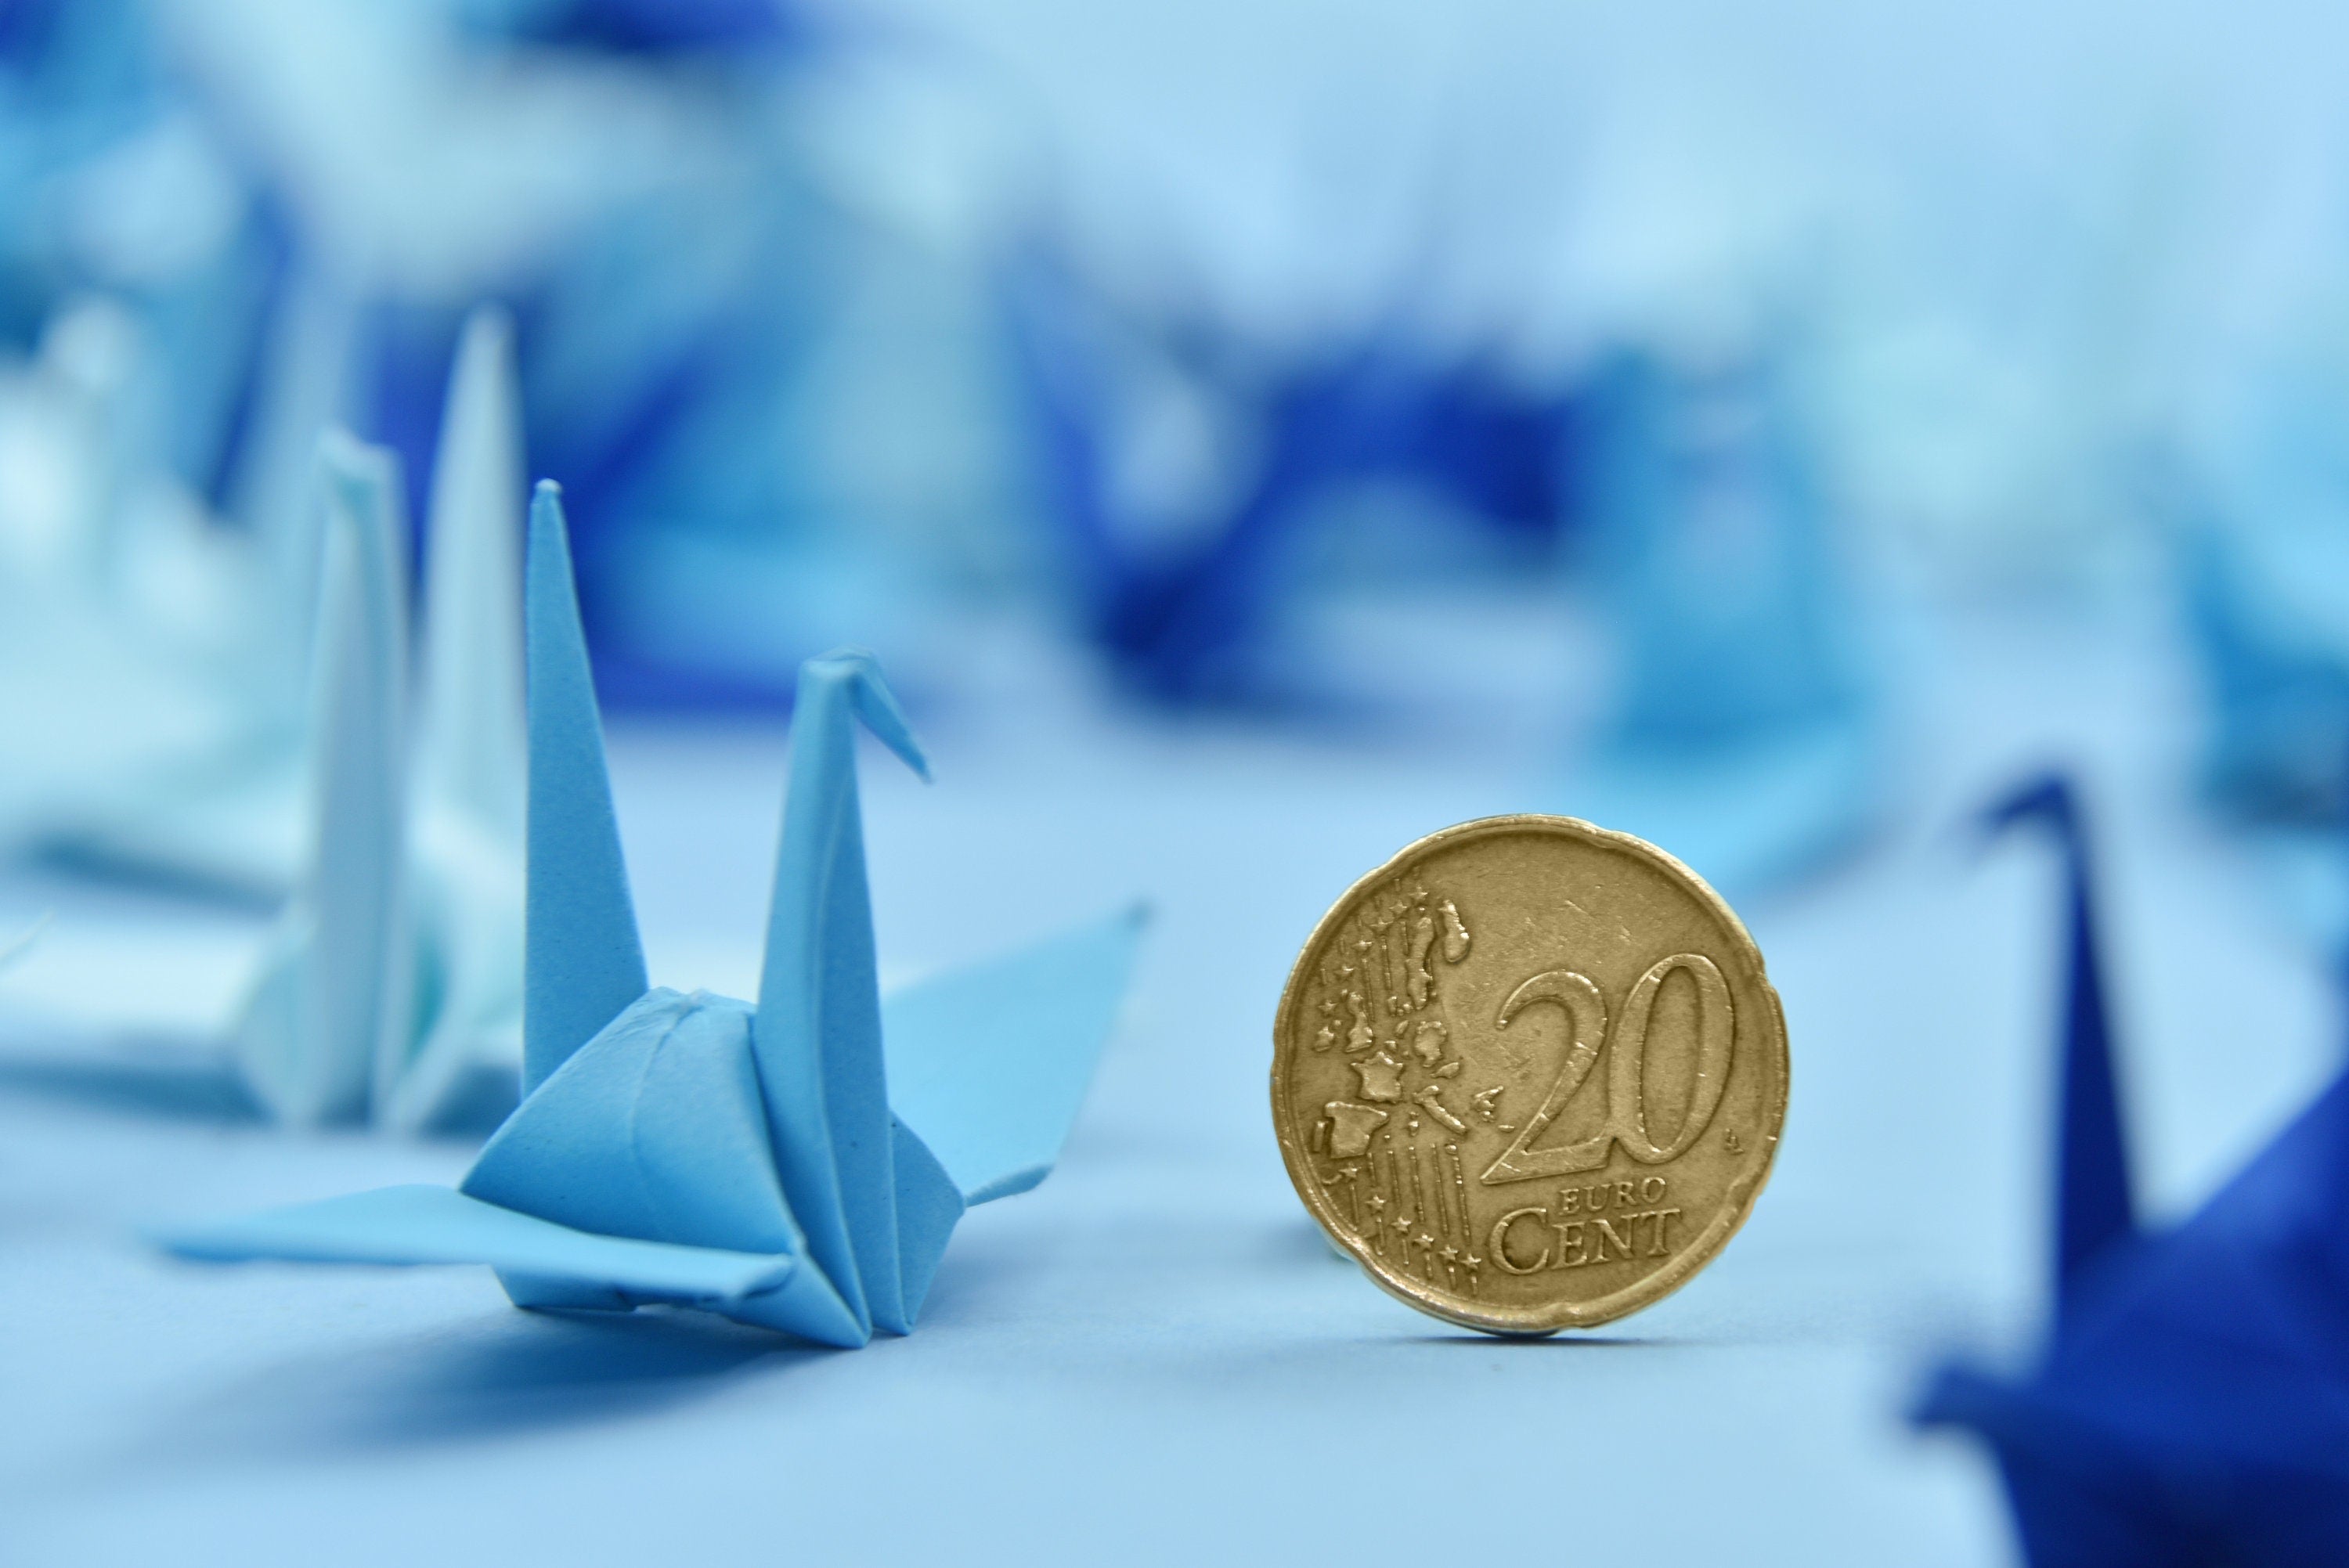 100 gru origami blu navy - 3" - OrigamiPolly - prefabbricate per matrimonio, anniversario, sfondo di San Valentino